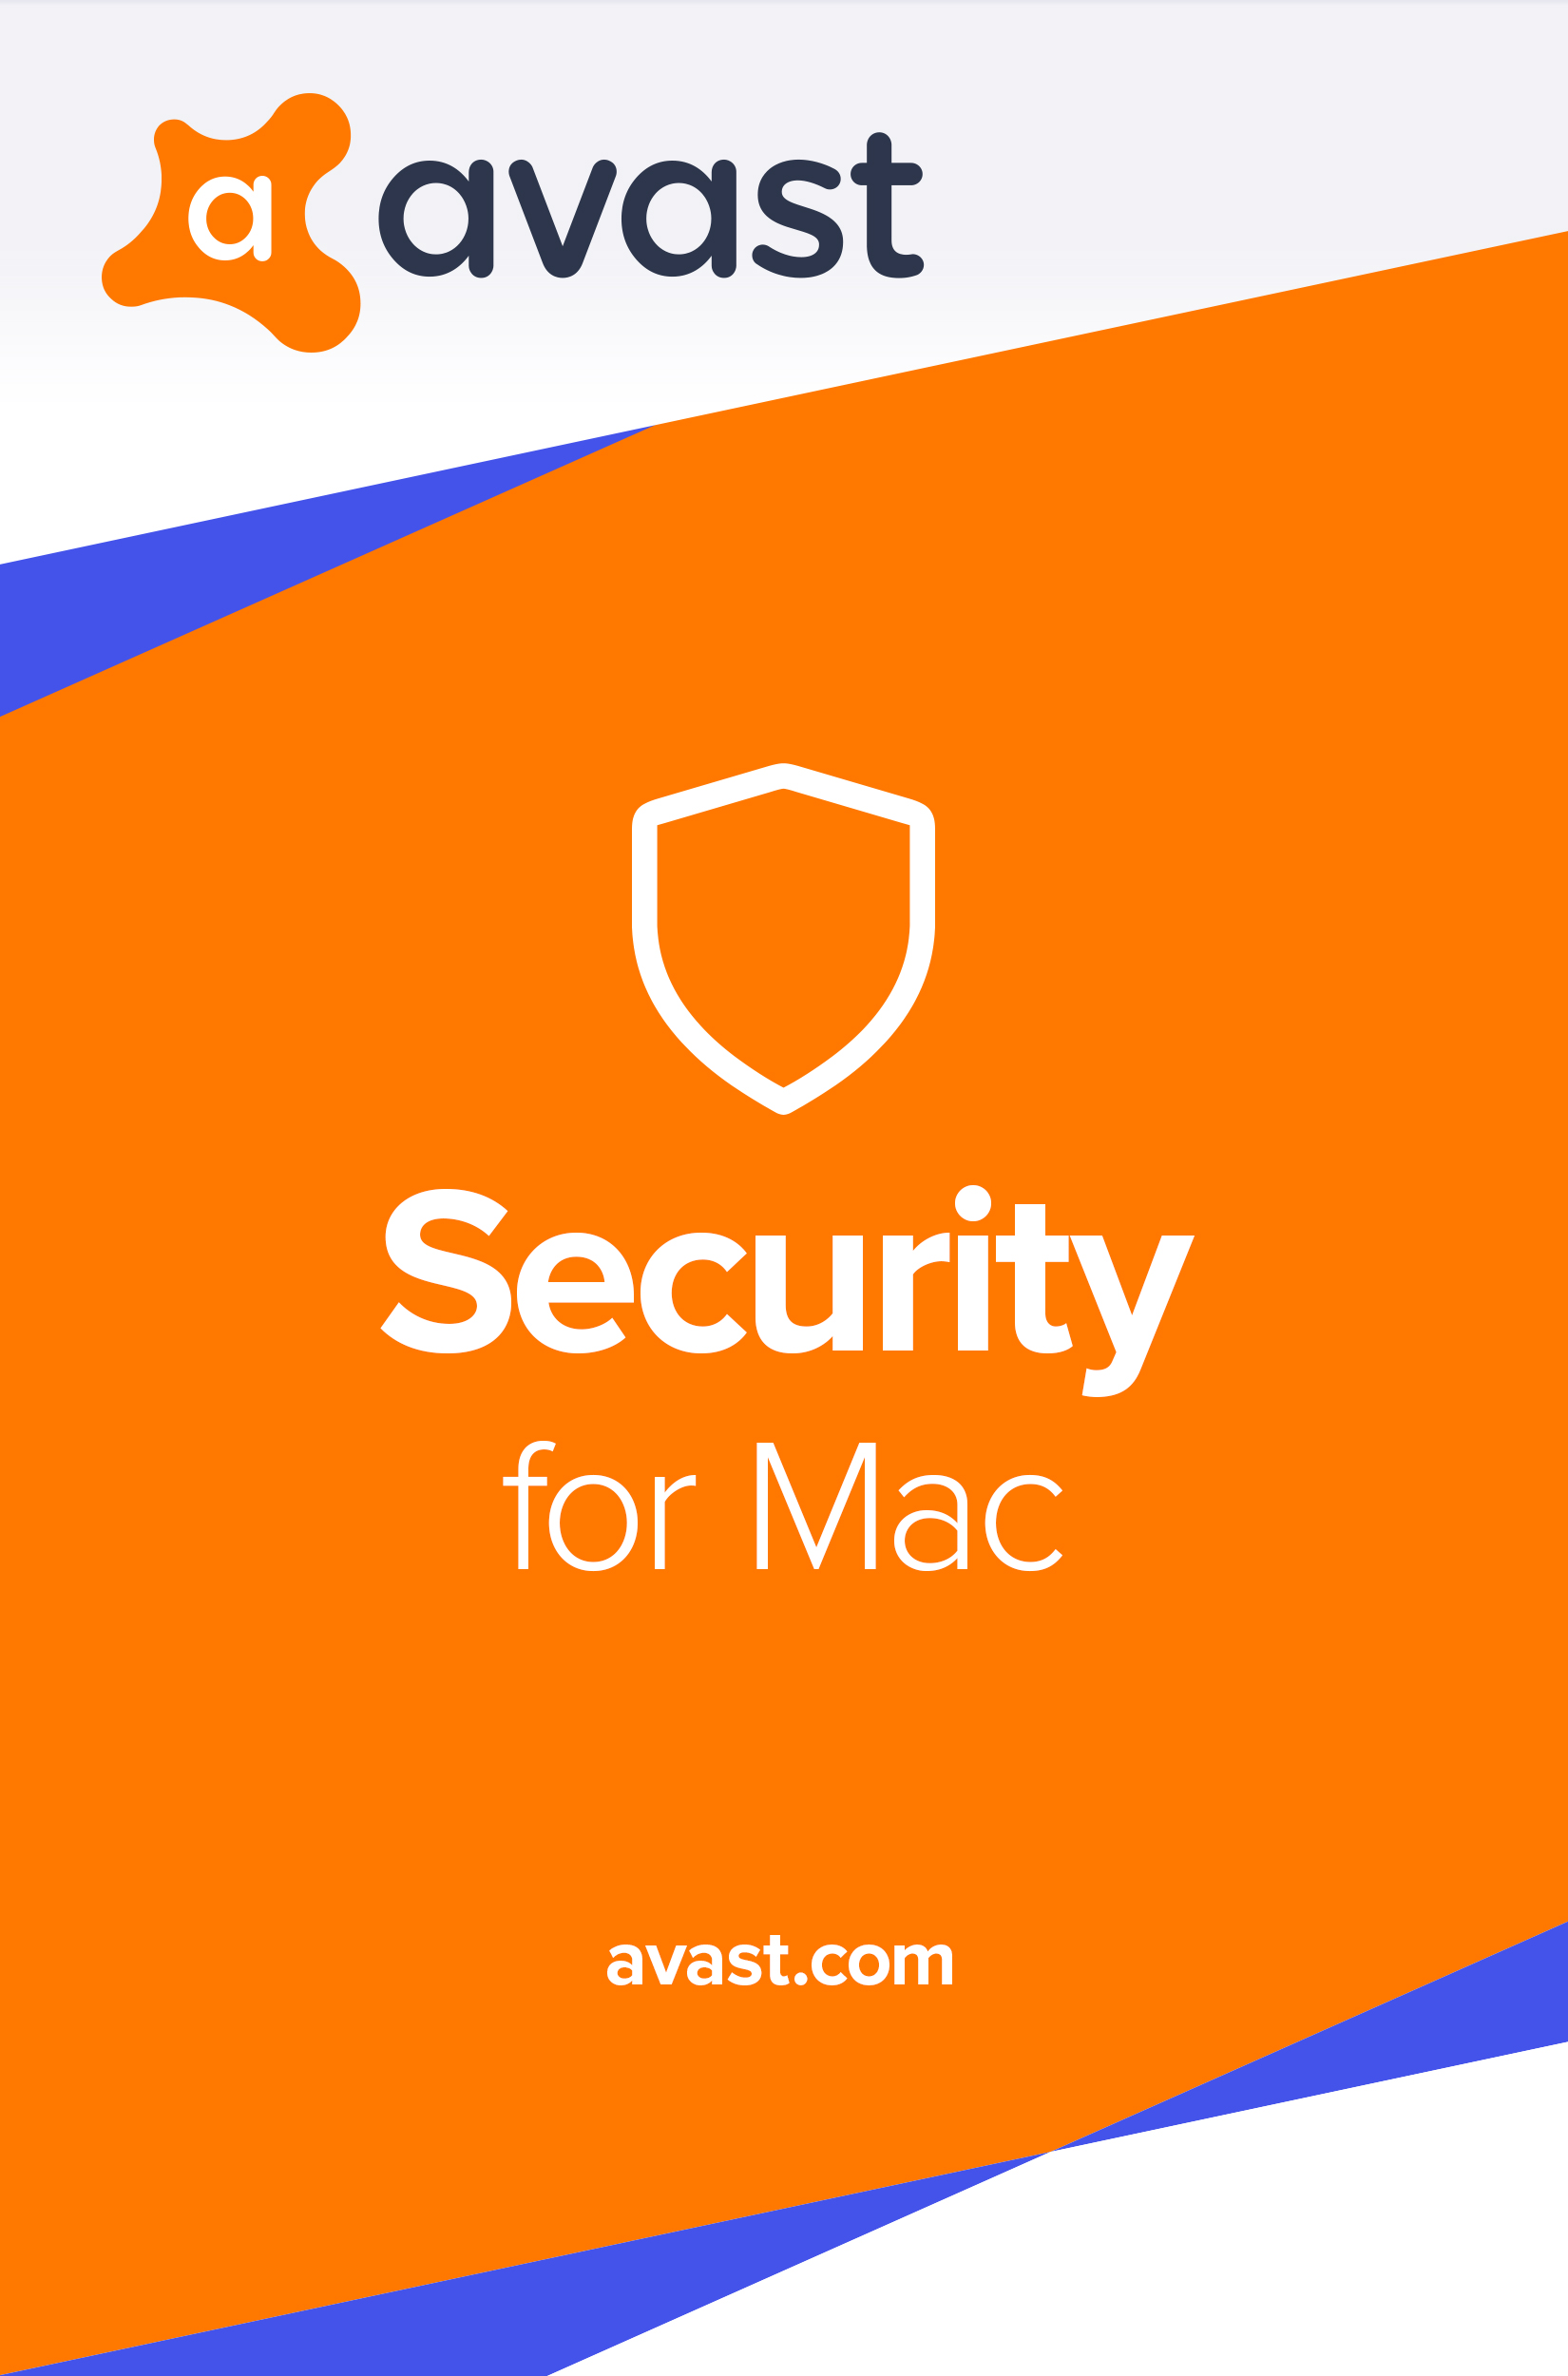 Anti Virus Software For Mac